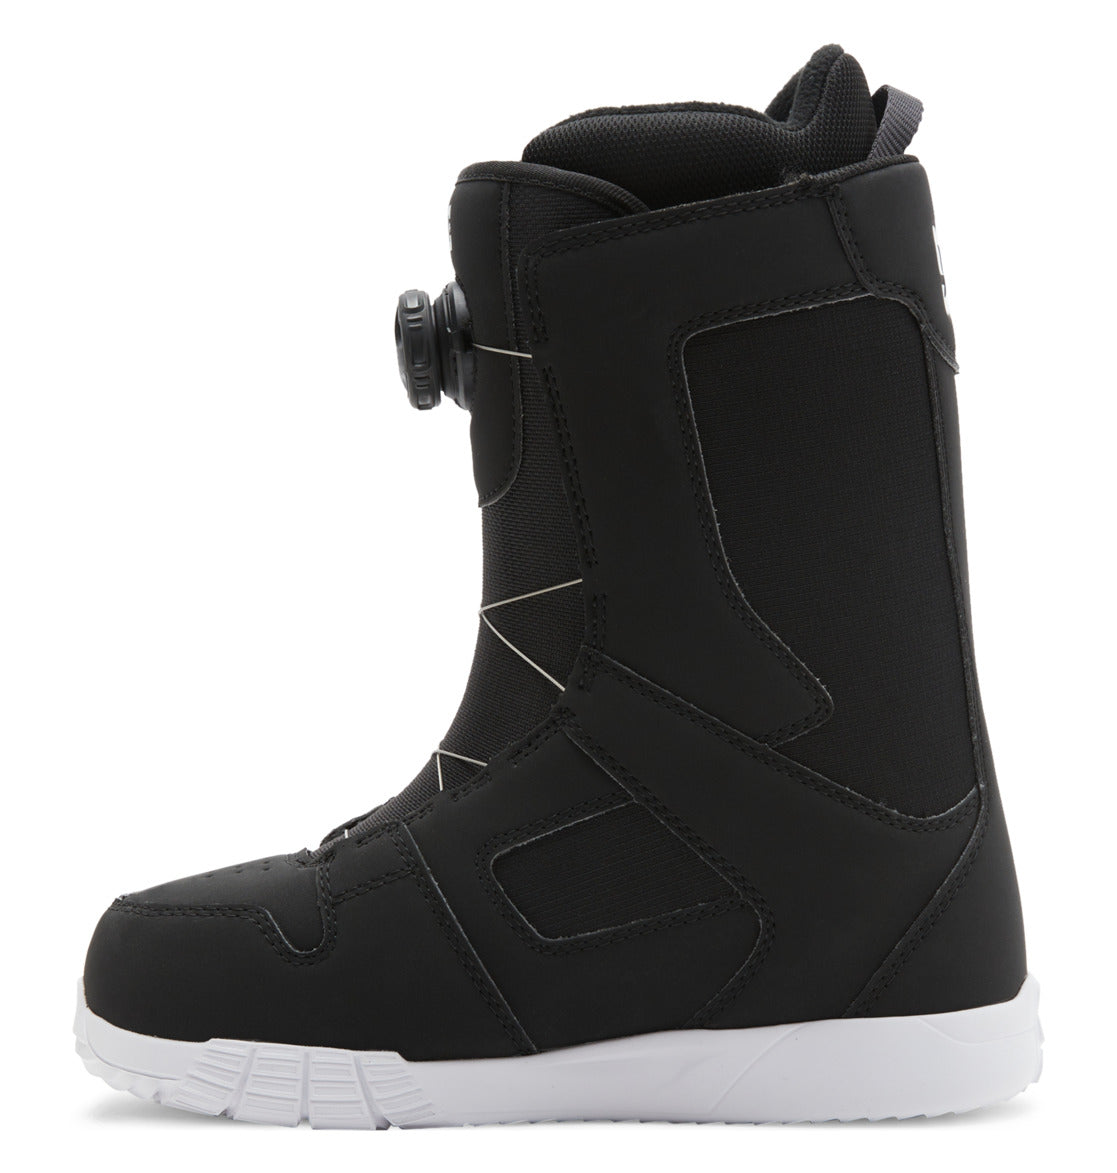 Bottes de snowboard DC Shoes Phase BOA pour femmes - Noir/Blanc